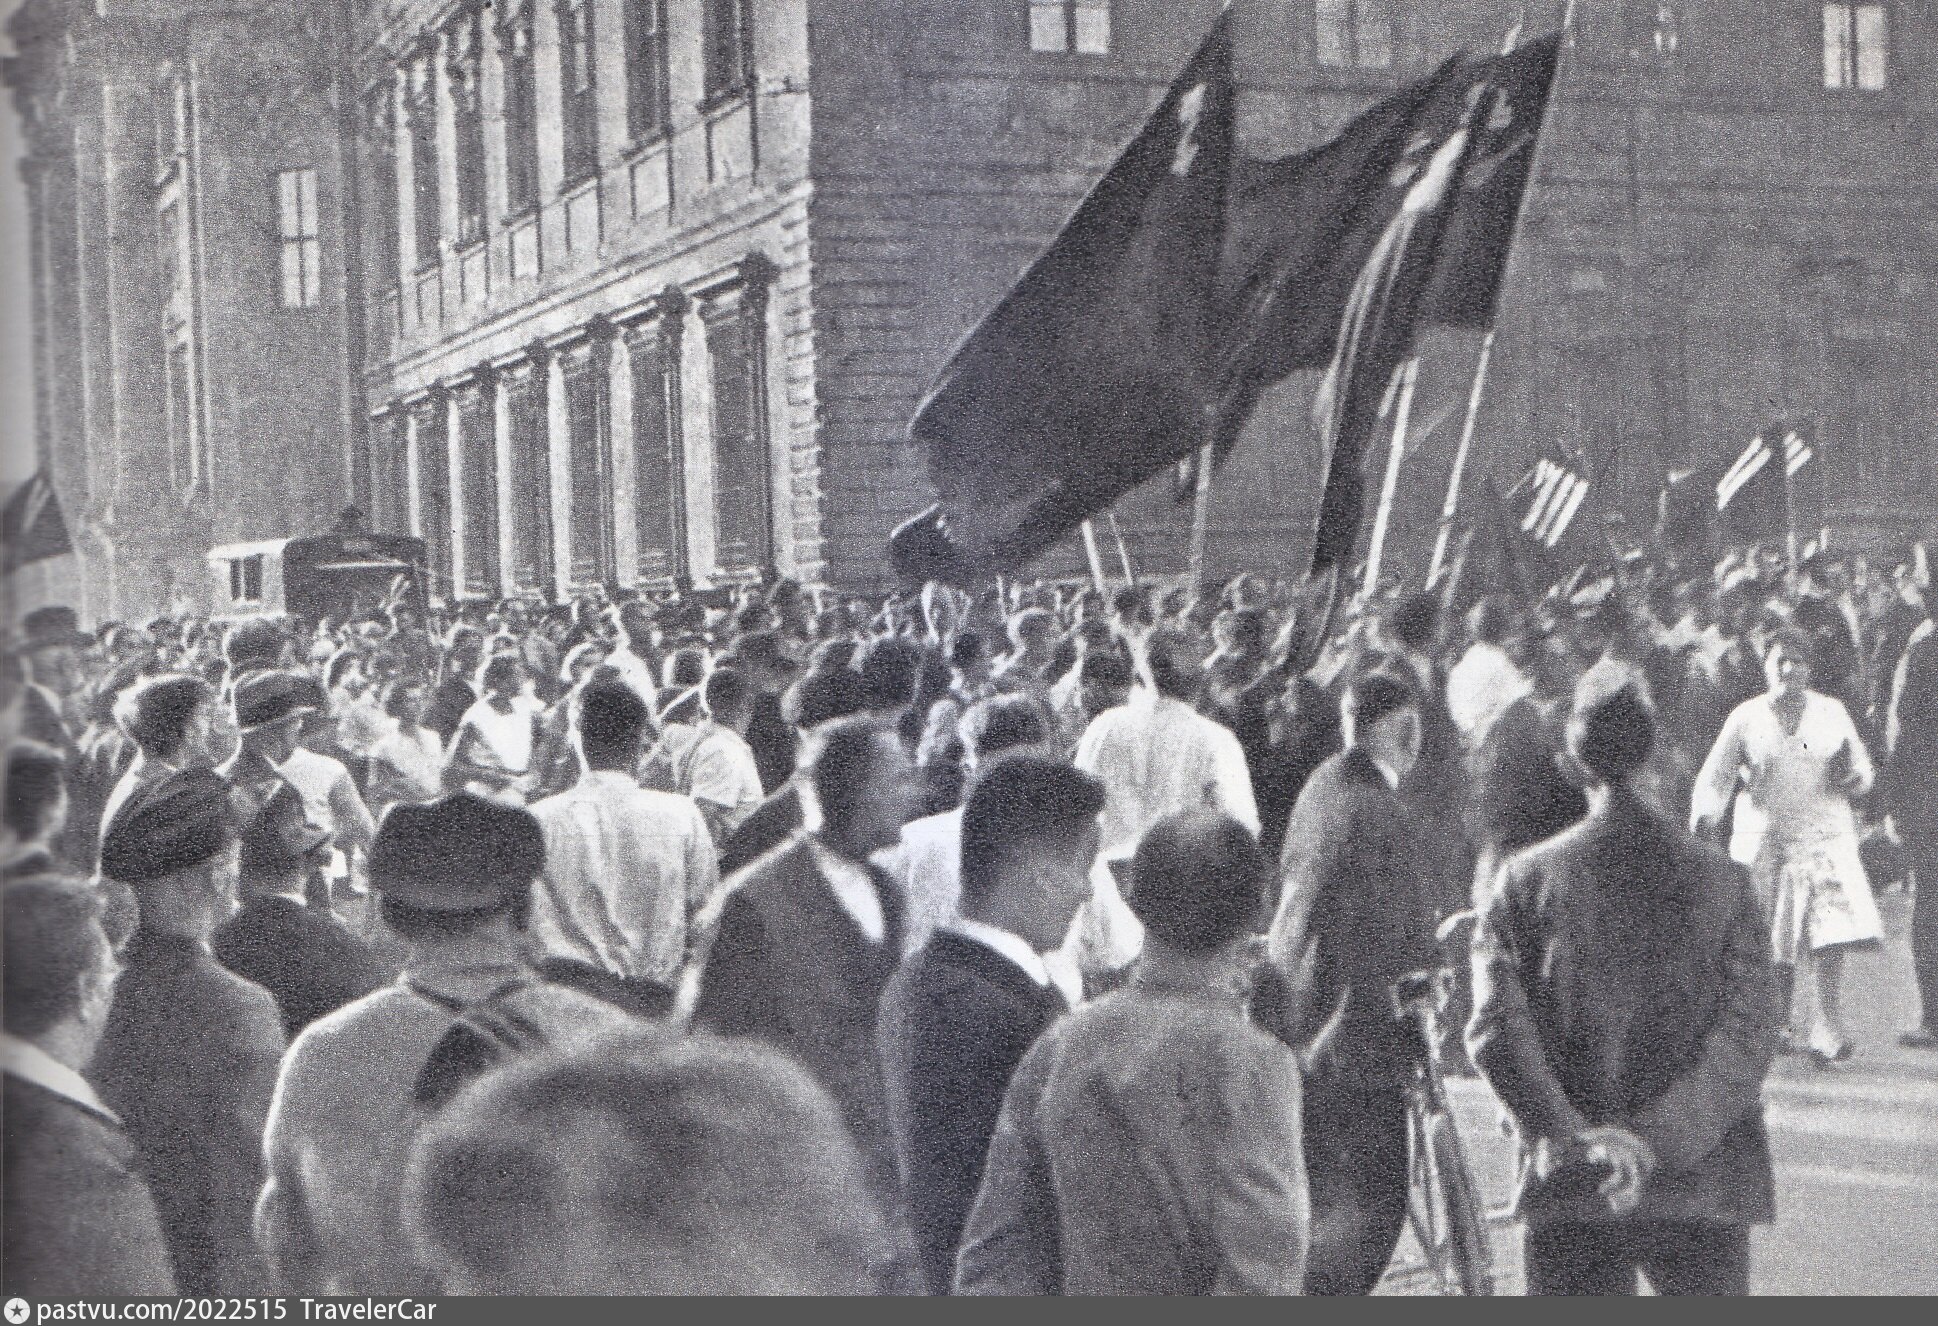 Митинг в Германии 1932. Антифашистская демонстрация в Париже 1934. Митинги фашизма в Германии 1933. Германия 1932. Антифашистские восстания